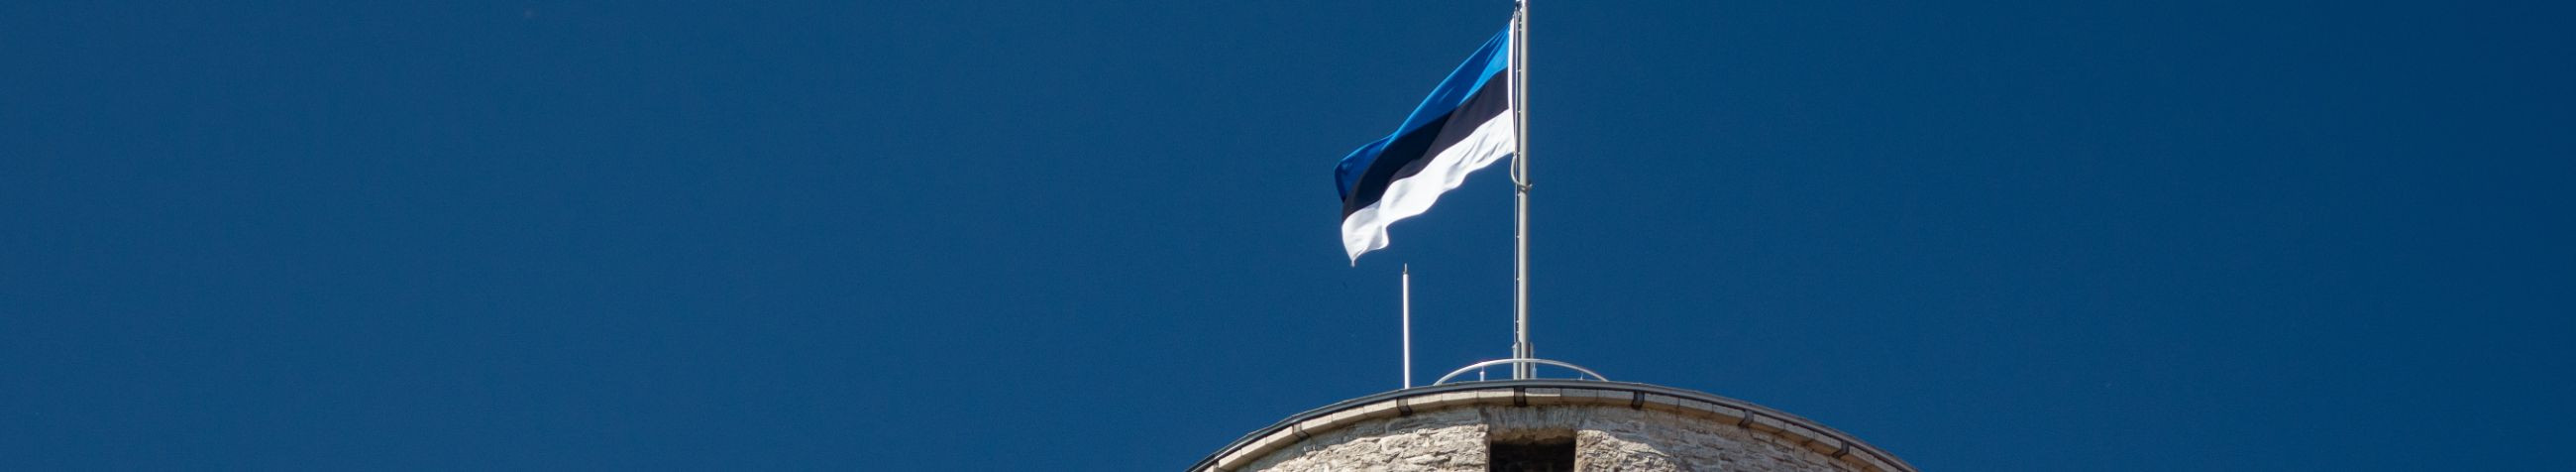 Eesti Väike- ja Keskmiste Ettevõtjate Assotsiatsioon (EVEA) on Eesti ainus väikeste ja keskmiste ettevõtjate esindusorganisatsioon.